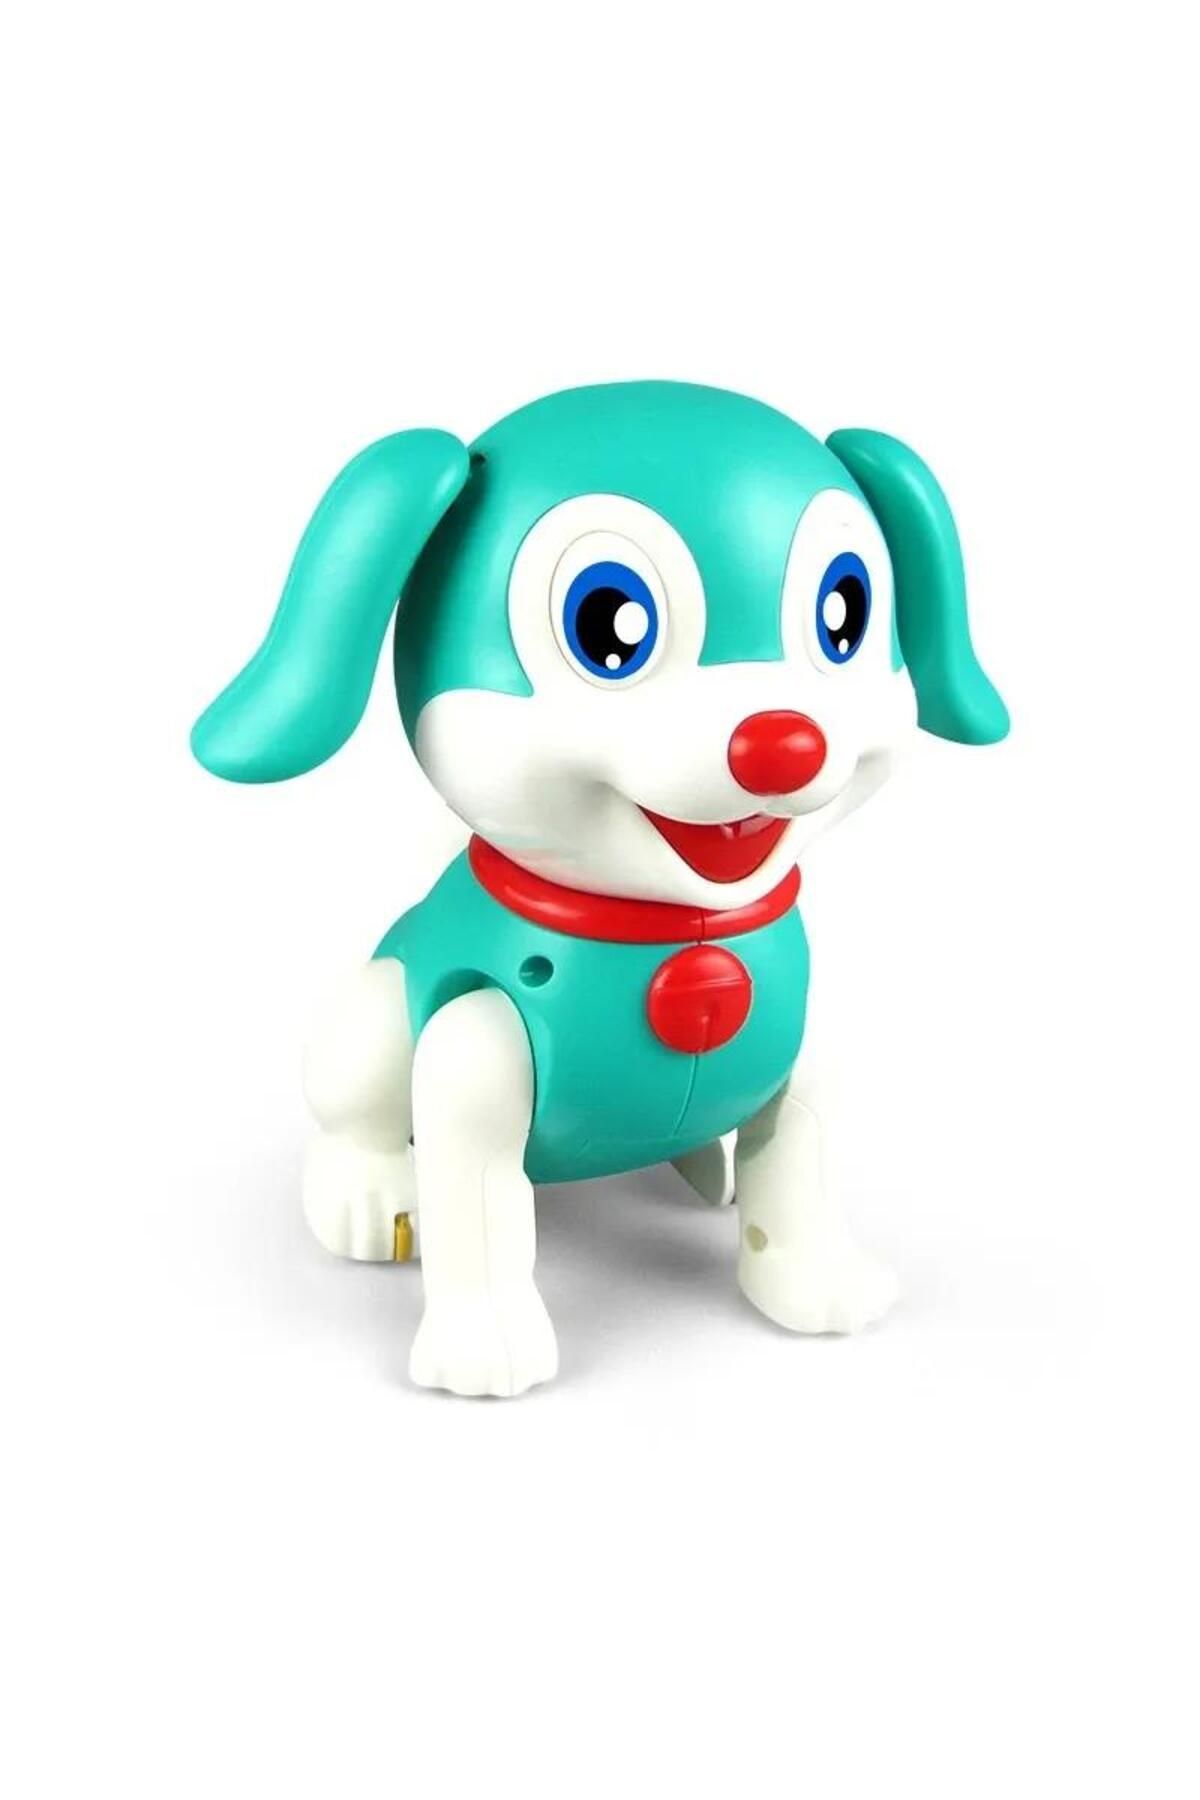 Can Ali Toys CANALİ Toys Pilli Yürüyen Köpek FW-2059A, Sesli Hareket Eden Robot Köpek